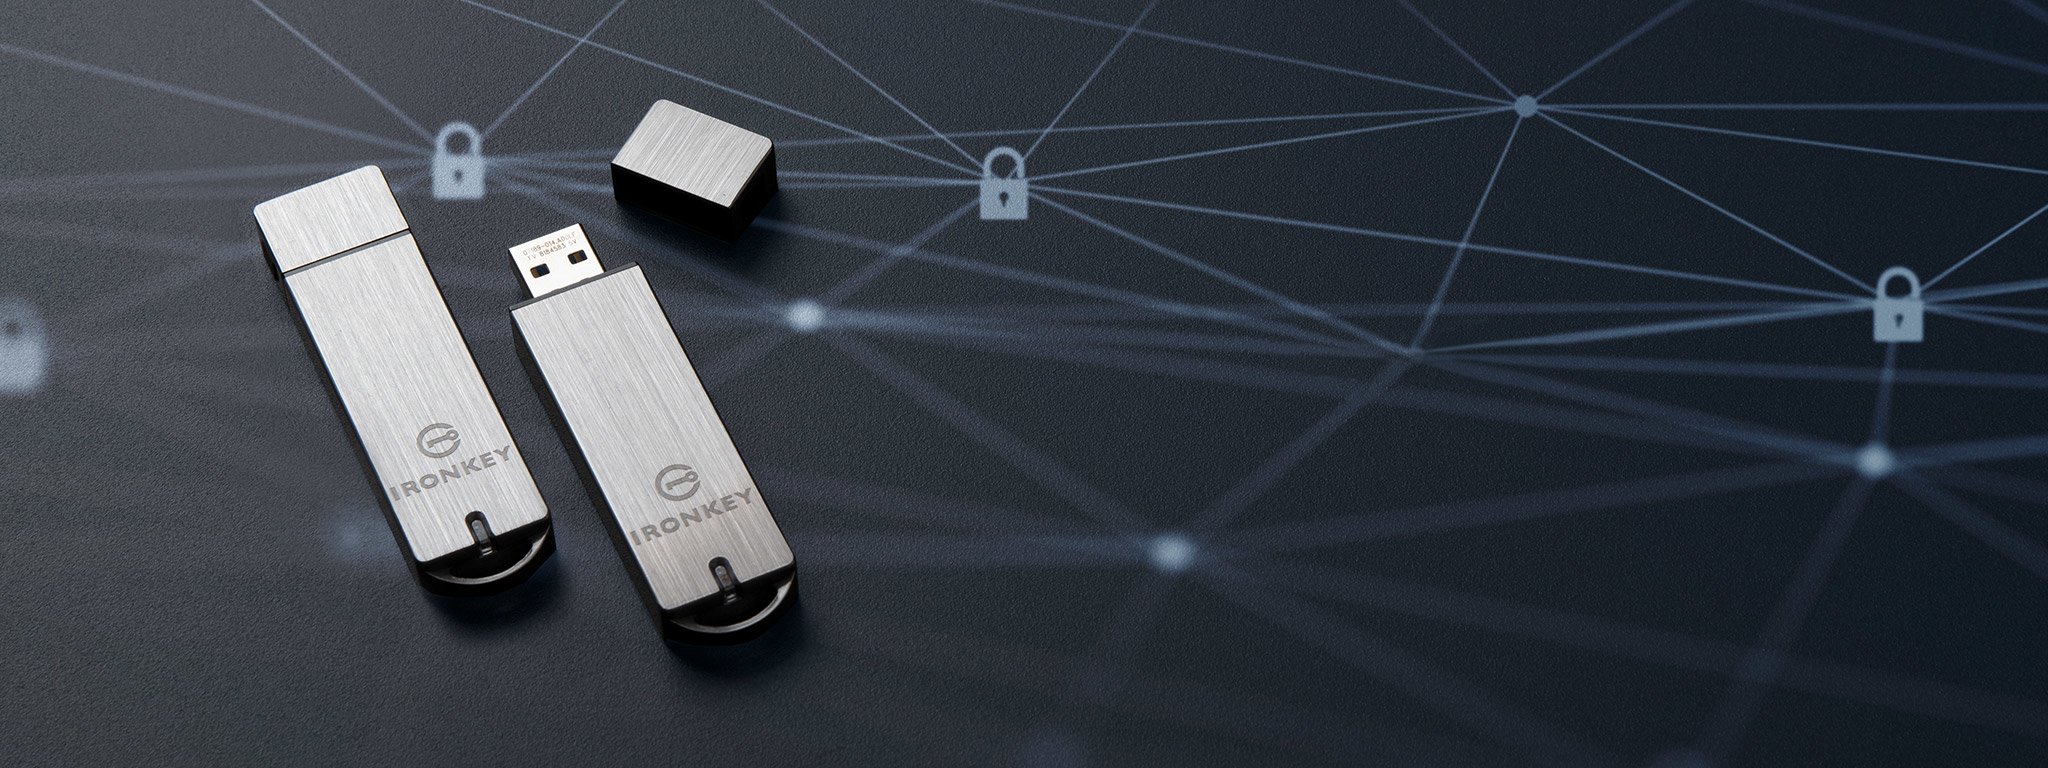 Sepasang flash drive USB Terenkripsi IronKey S1000 diletakkan pada permukaan hitam dengan gambar ikon kunci berwarna putih